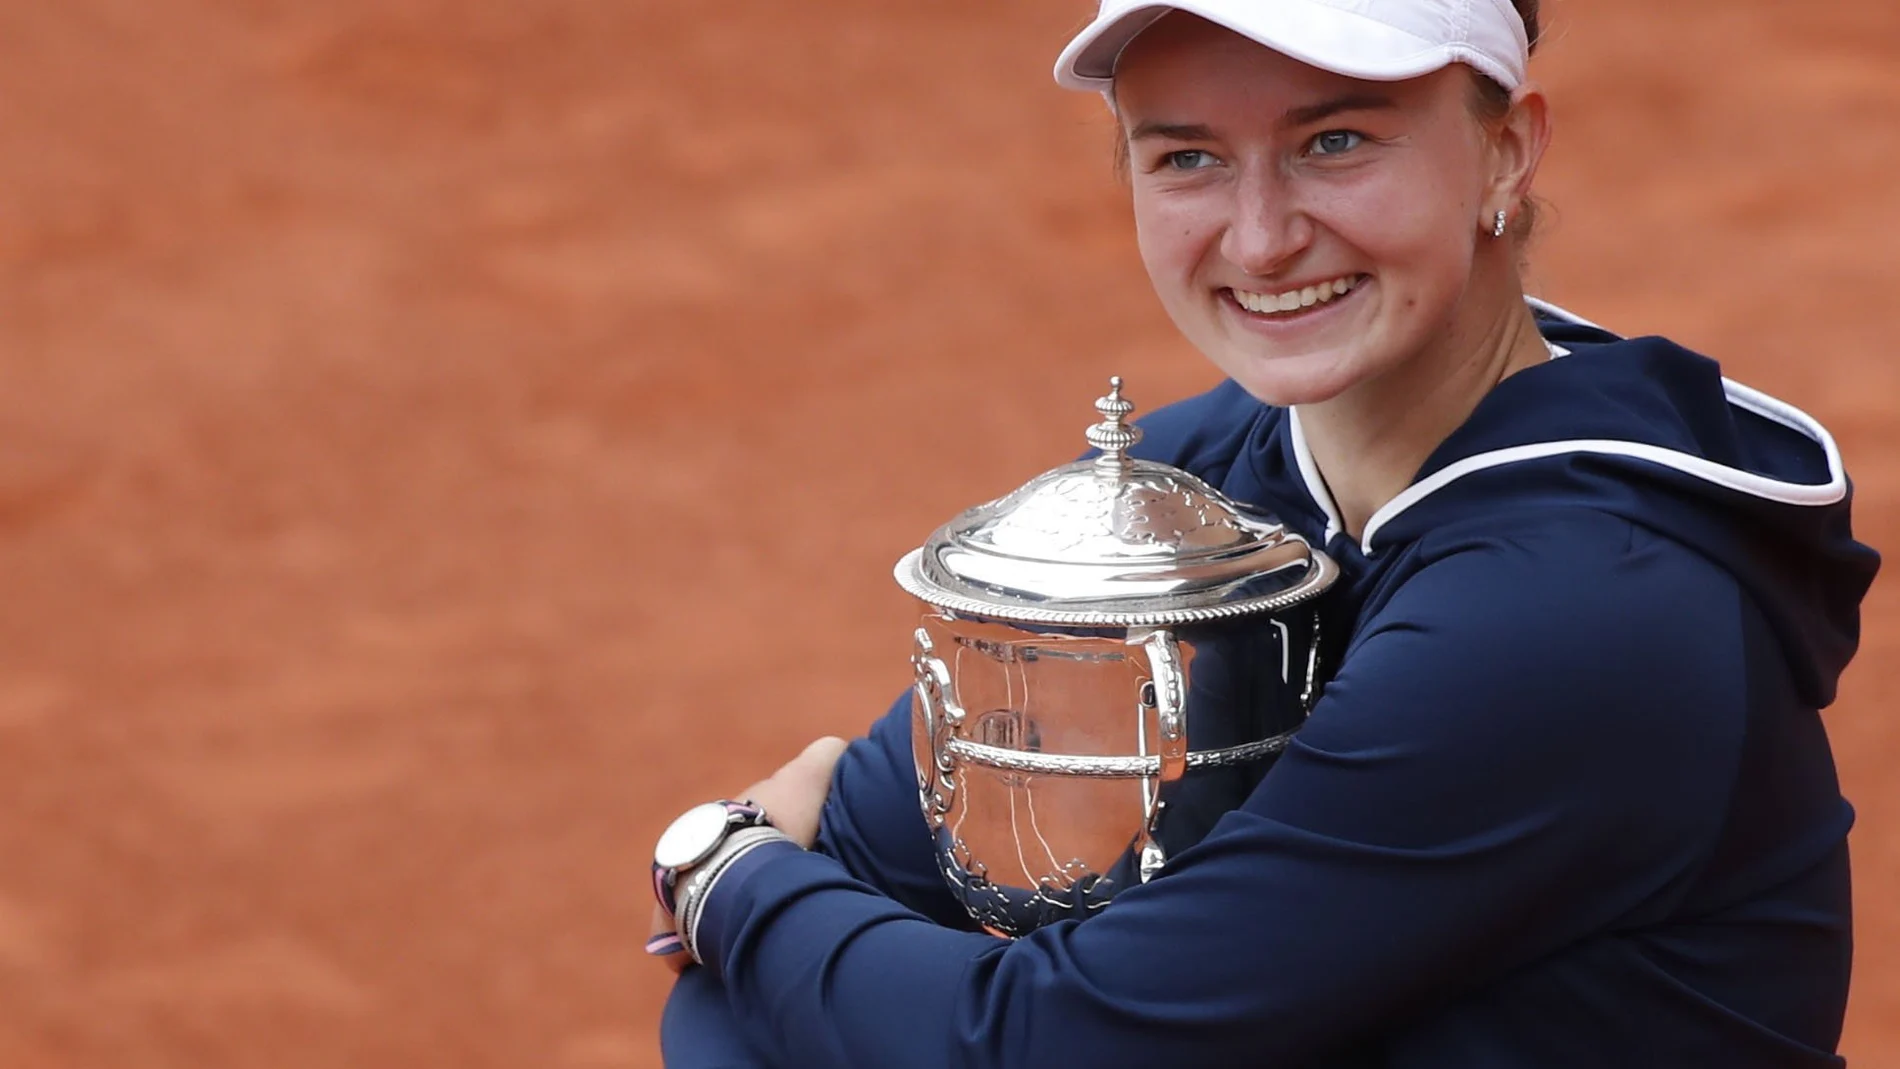 Barbora Krejcikova ha recibido 1.400.000 euros como campeona de Roland Garros. La misma cantidad que recibirá Djokovic